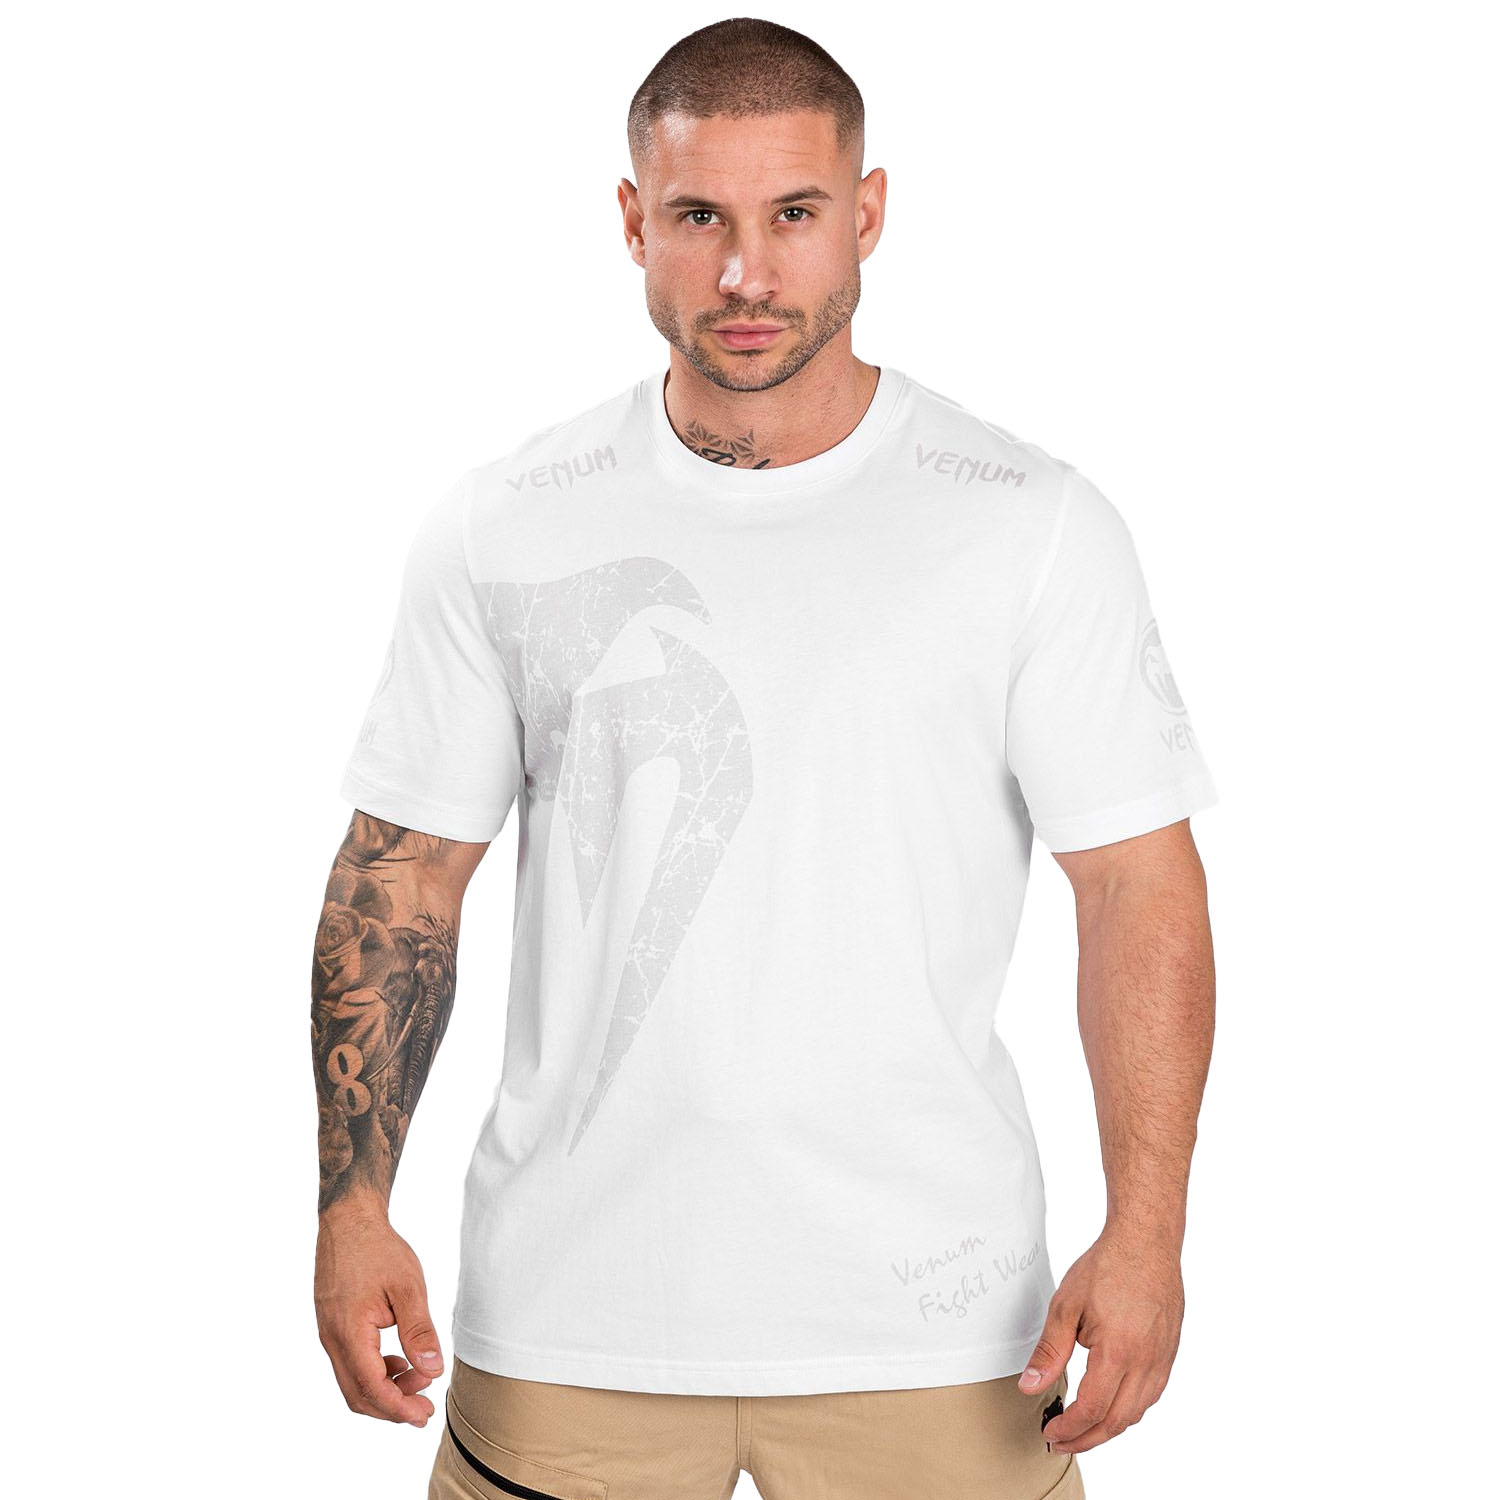 VENUM T-Shirt, Giant, white, L